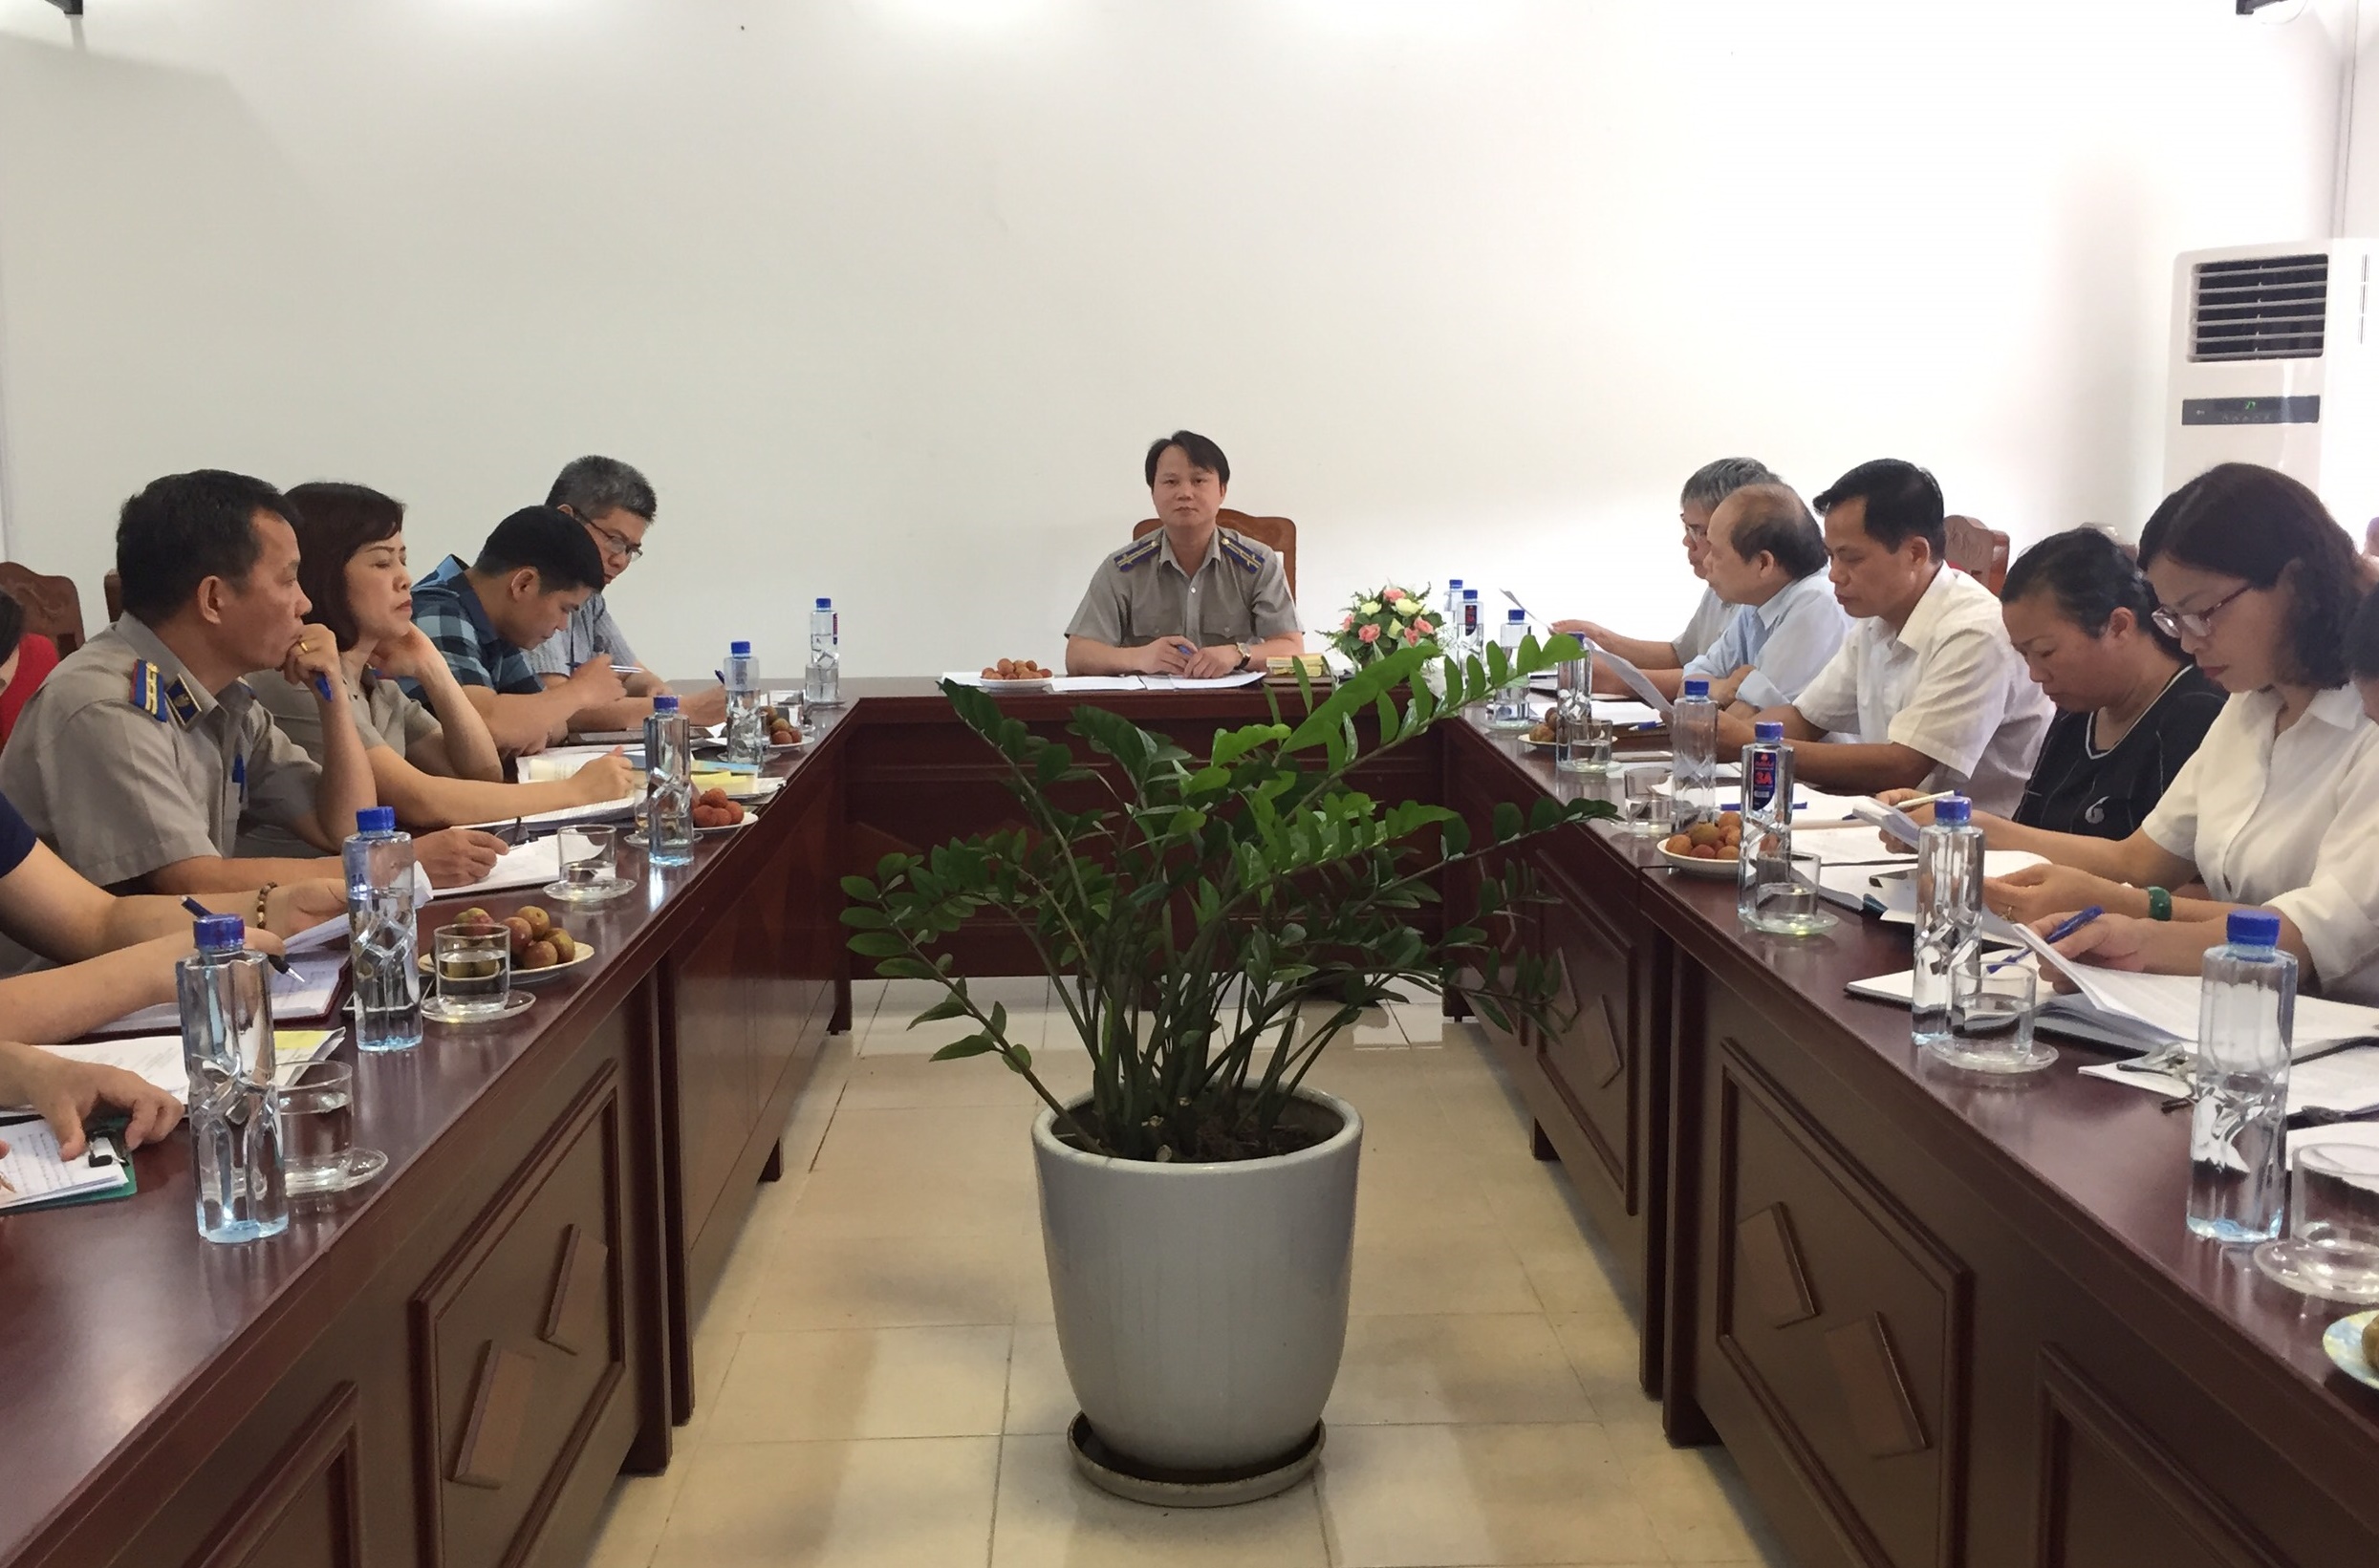 Cục Thi hành án dân sự tỉnh Cao Bằng tổ chức họp liên ngành để giải quyết một số vụ việc thi hành án khó khăn, phức tạp